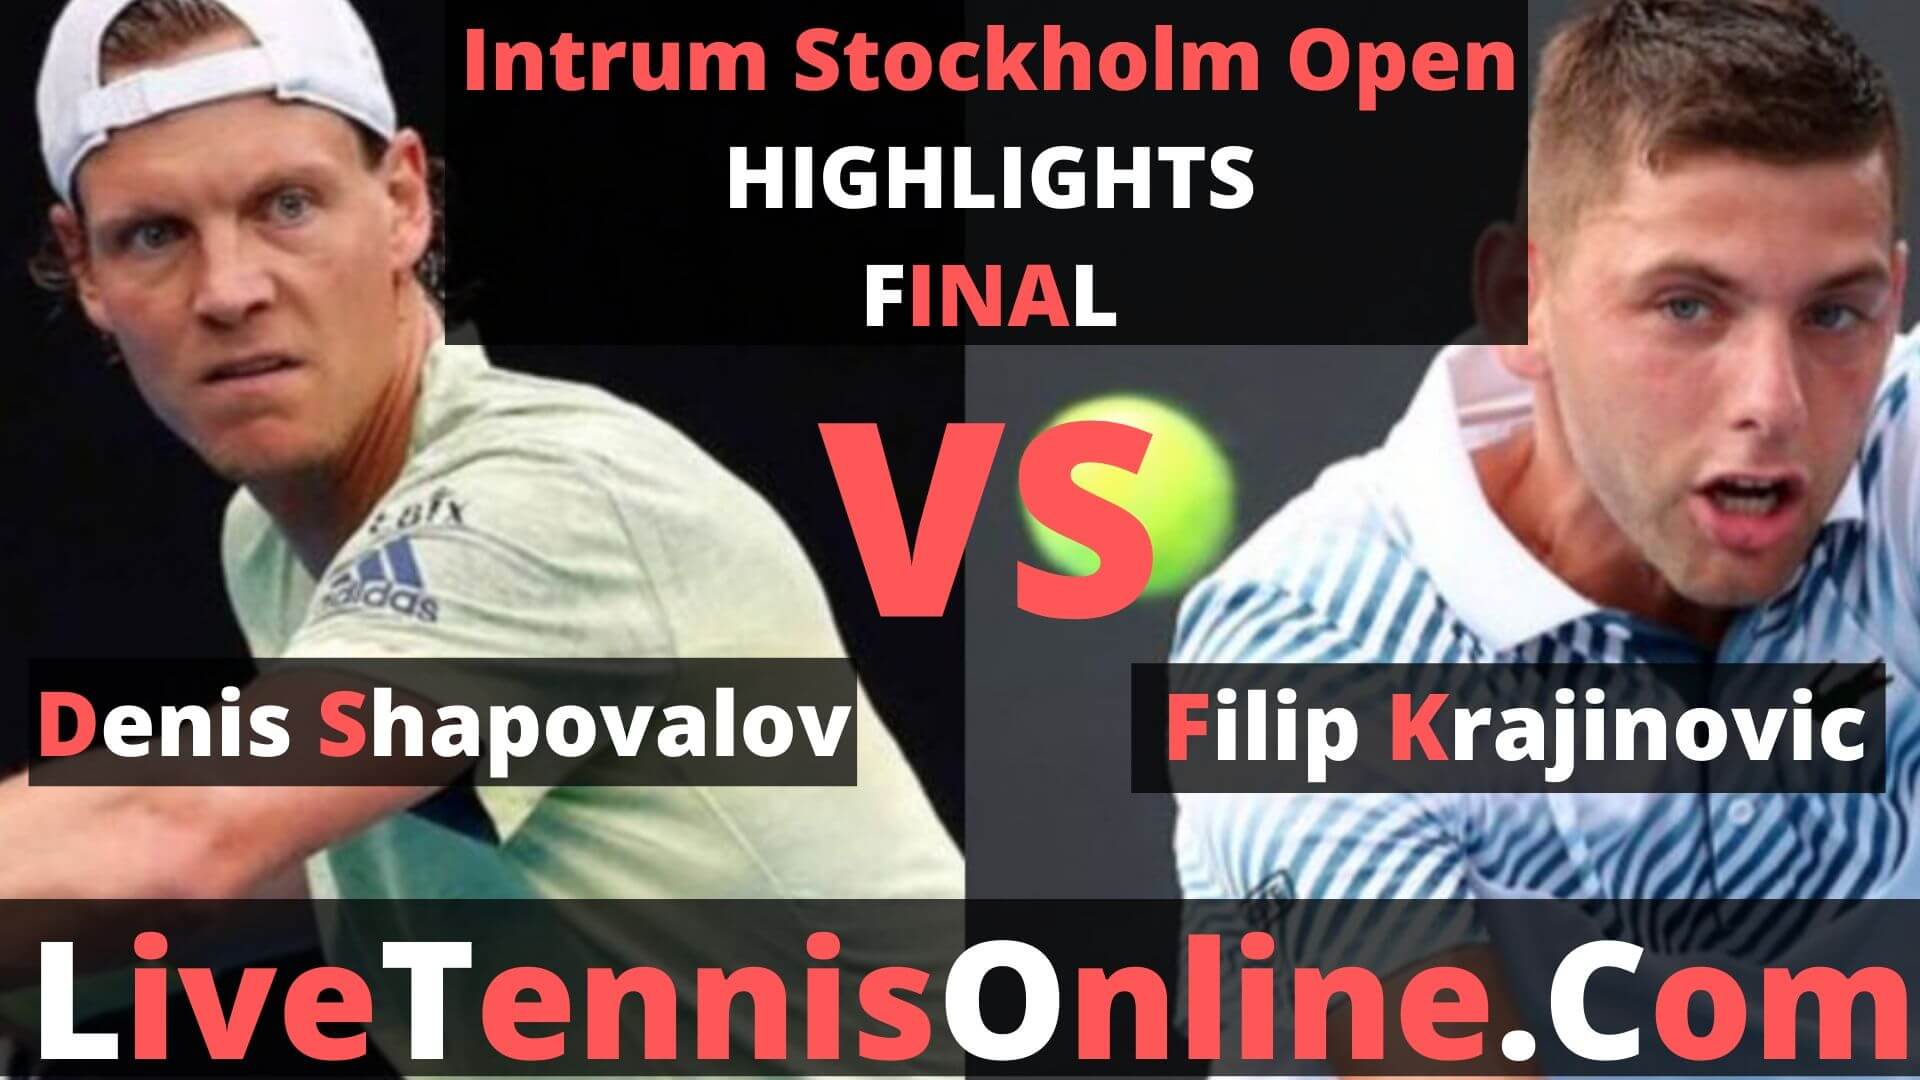 Denis Shapovalov Vs Filip Krajinovic Highlights 2019 Intrum Stockholm Open Final